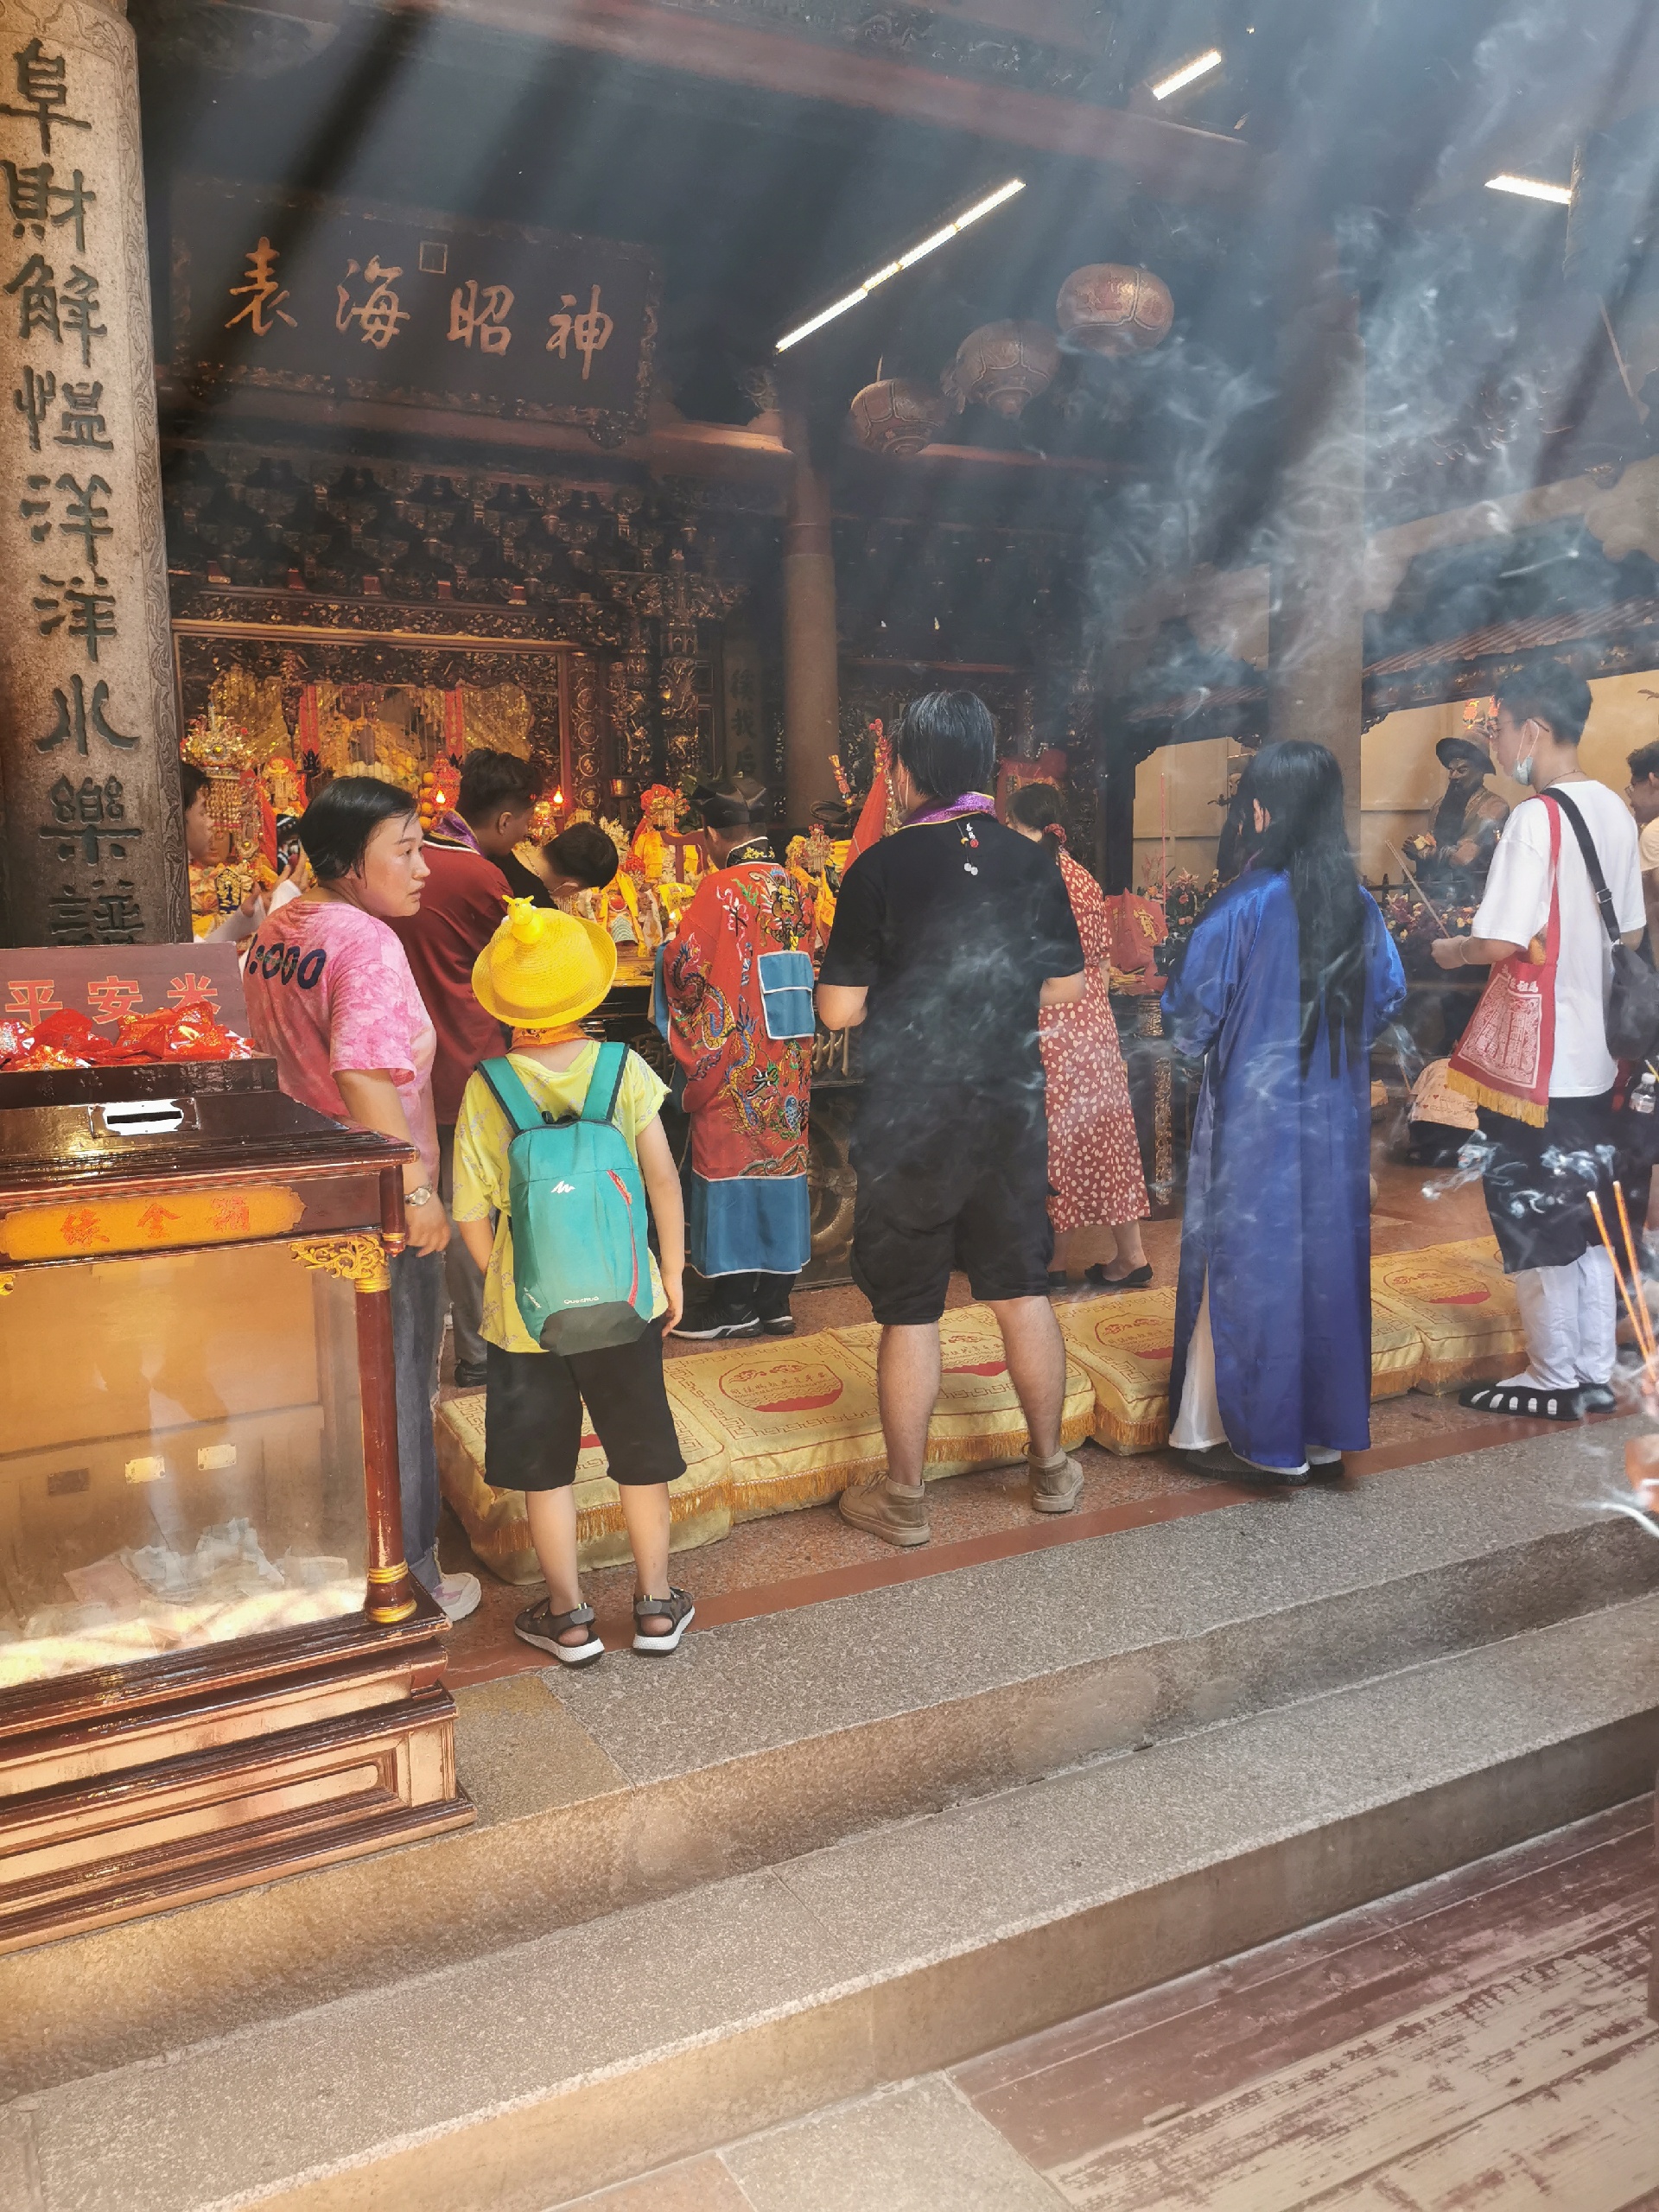 湄洲岛妈祖庙，人气超旺得寺庙！据说这里的祈福非常零验，每天的人流络绎不绝